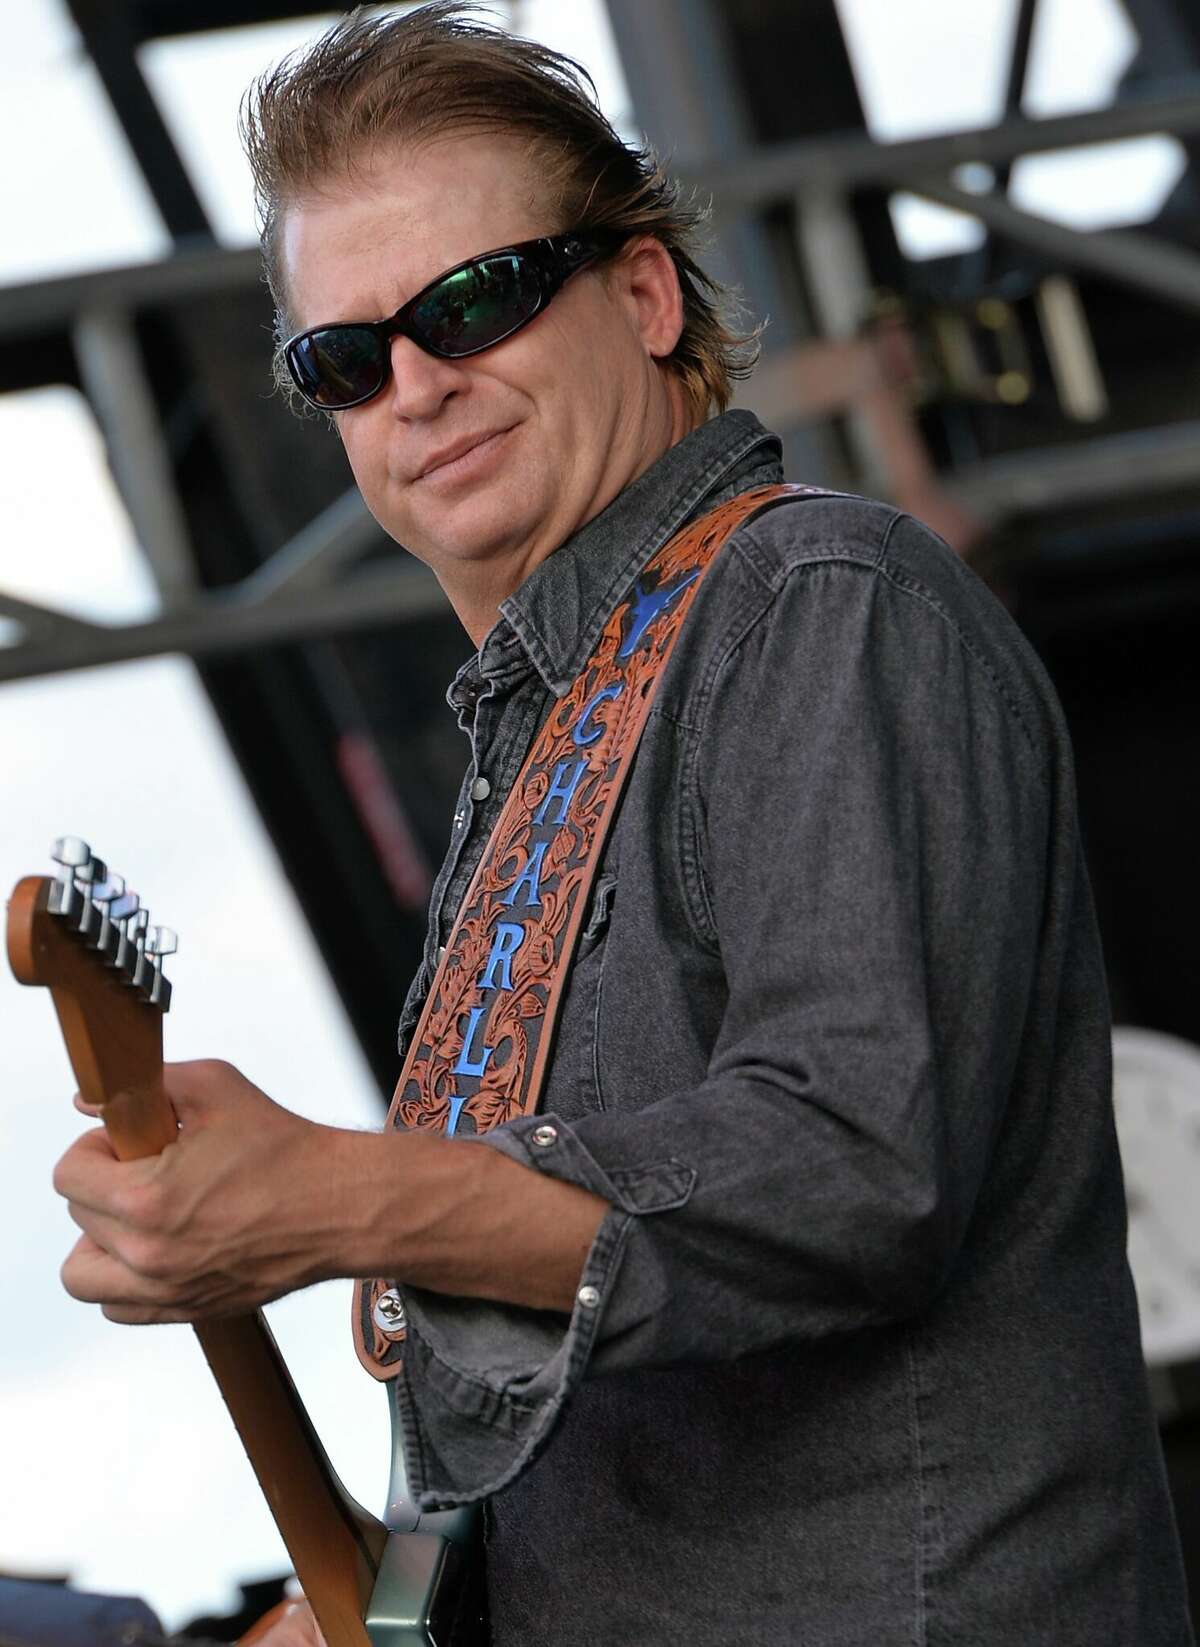 Charlie Robison występuje na Texas Thunder Festival 2013 – dzień 1 17 maja 2013 w Gardendale w Teksasie.